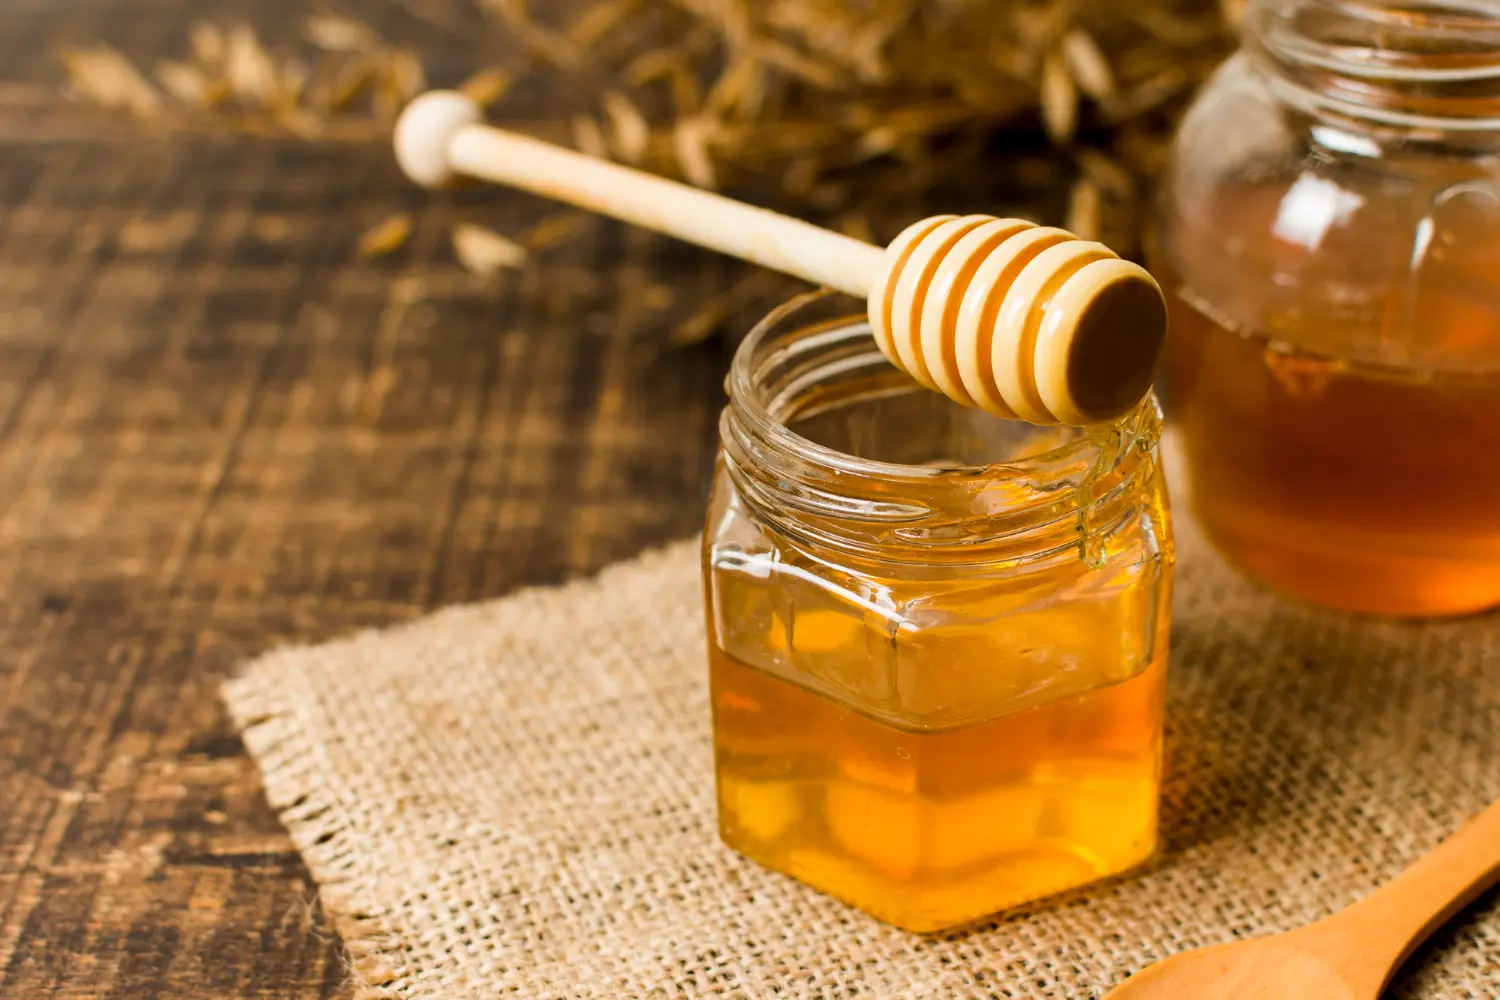 Los seis mejores beneficios de la miel respaldados por la ciencia